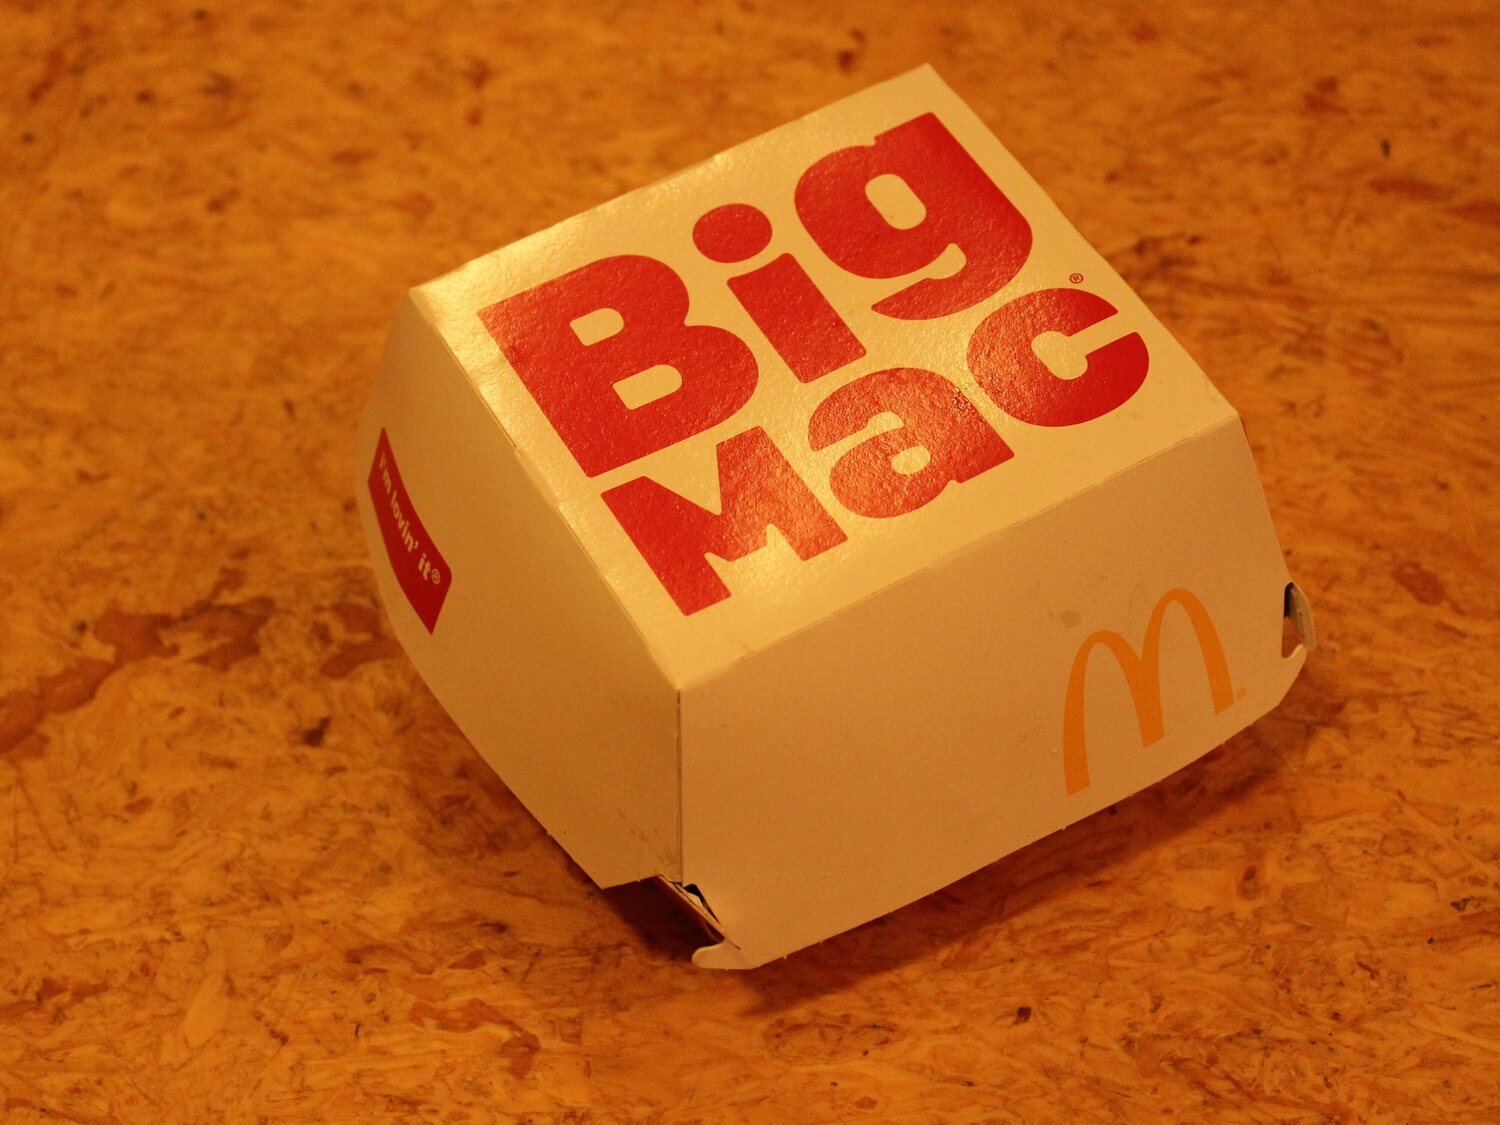 Abandona la comida rápida tras compartir el aspecto de una hamburguesa de McDonald's olvidada 4 años